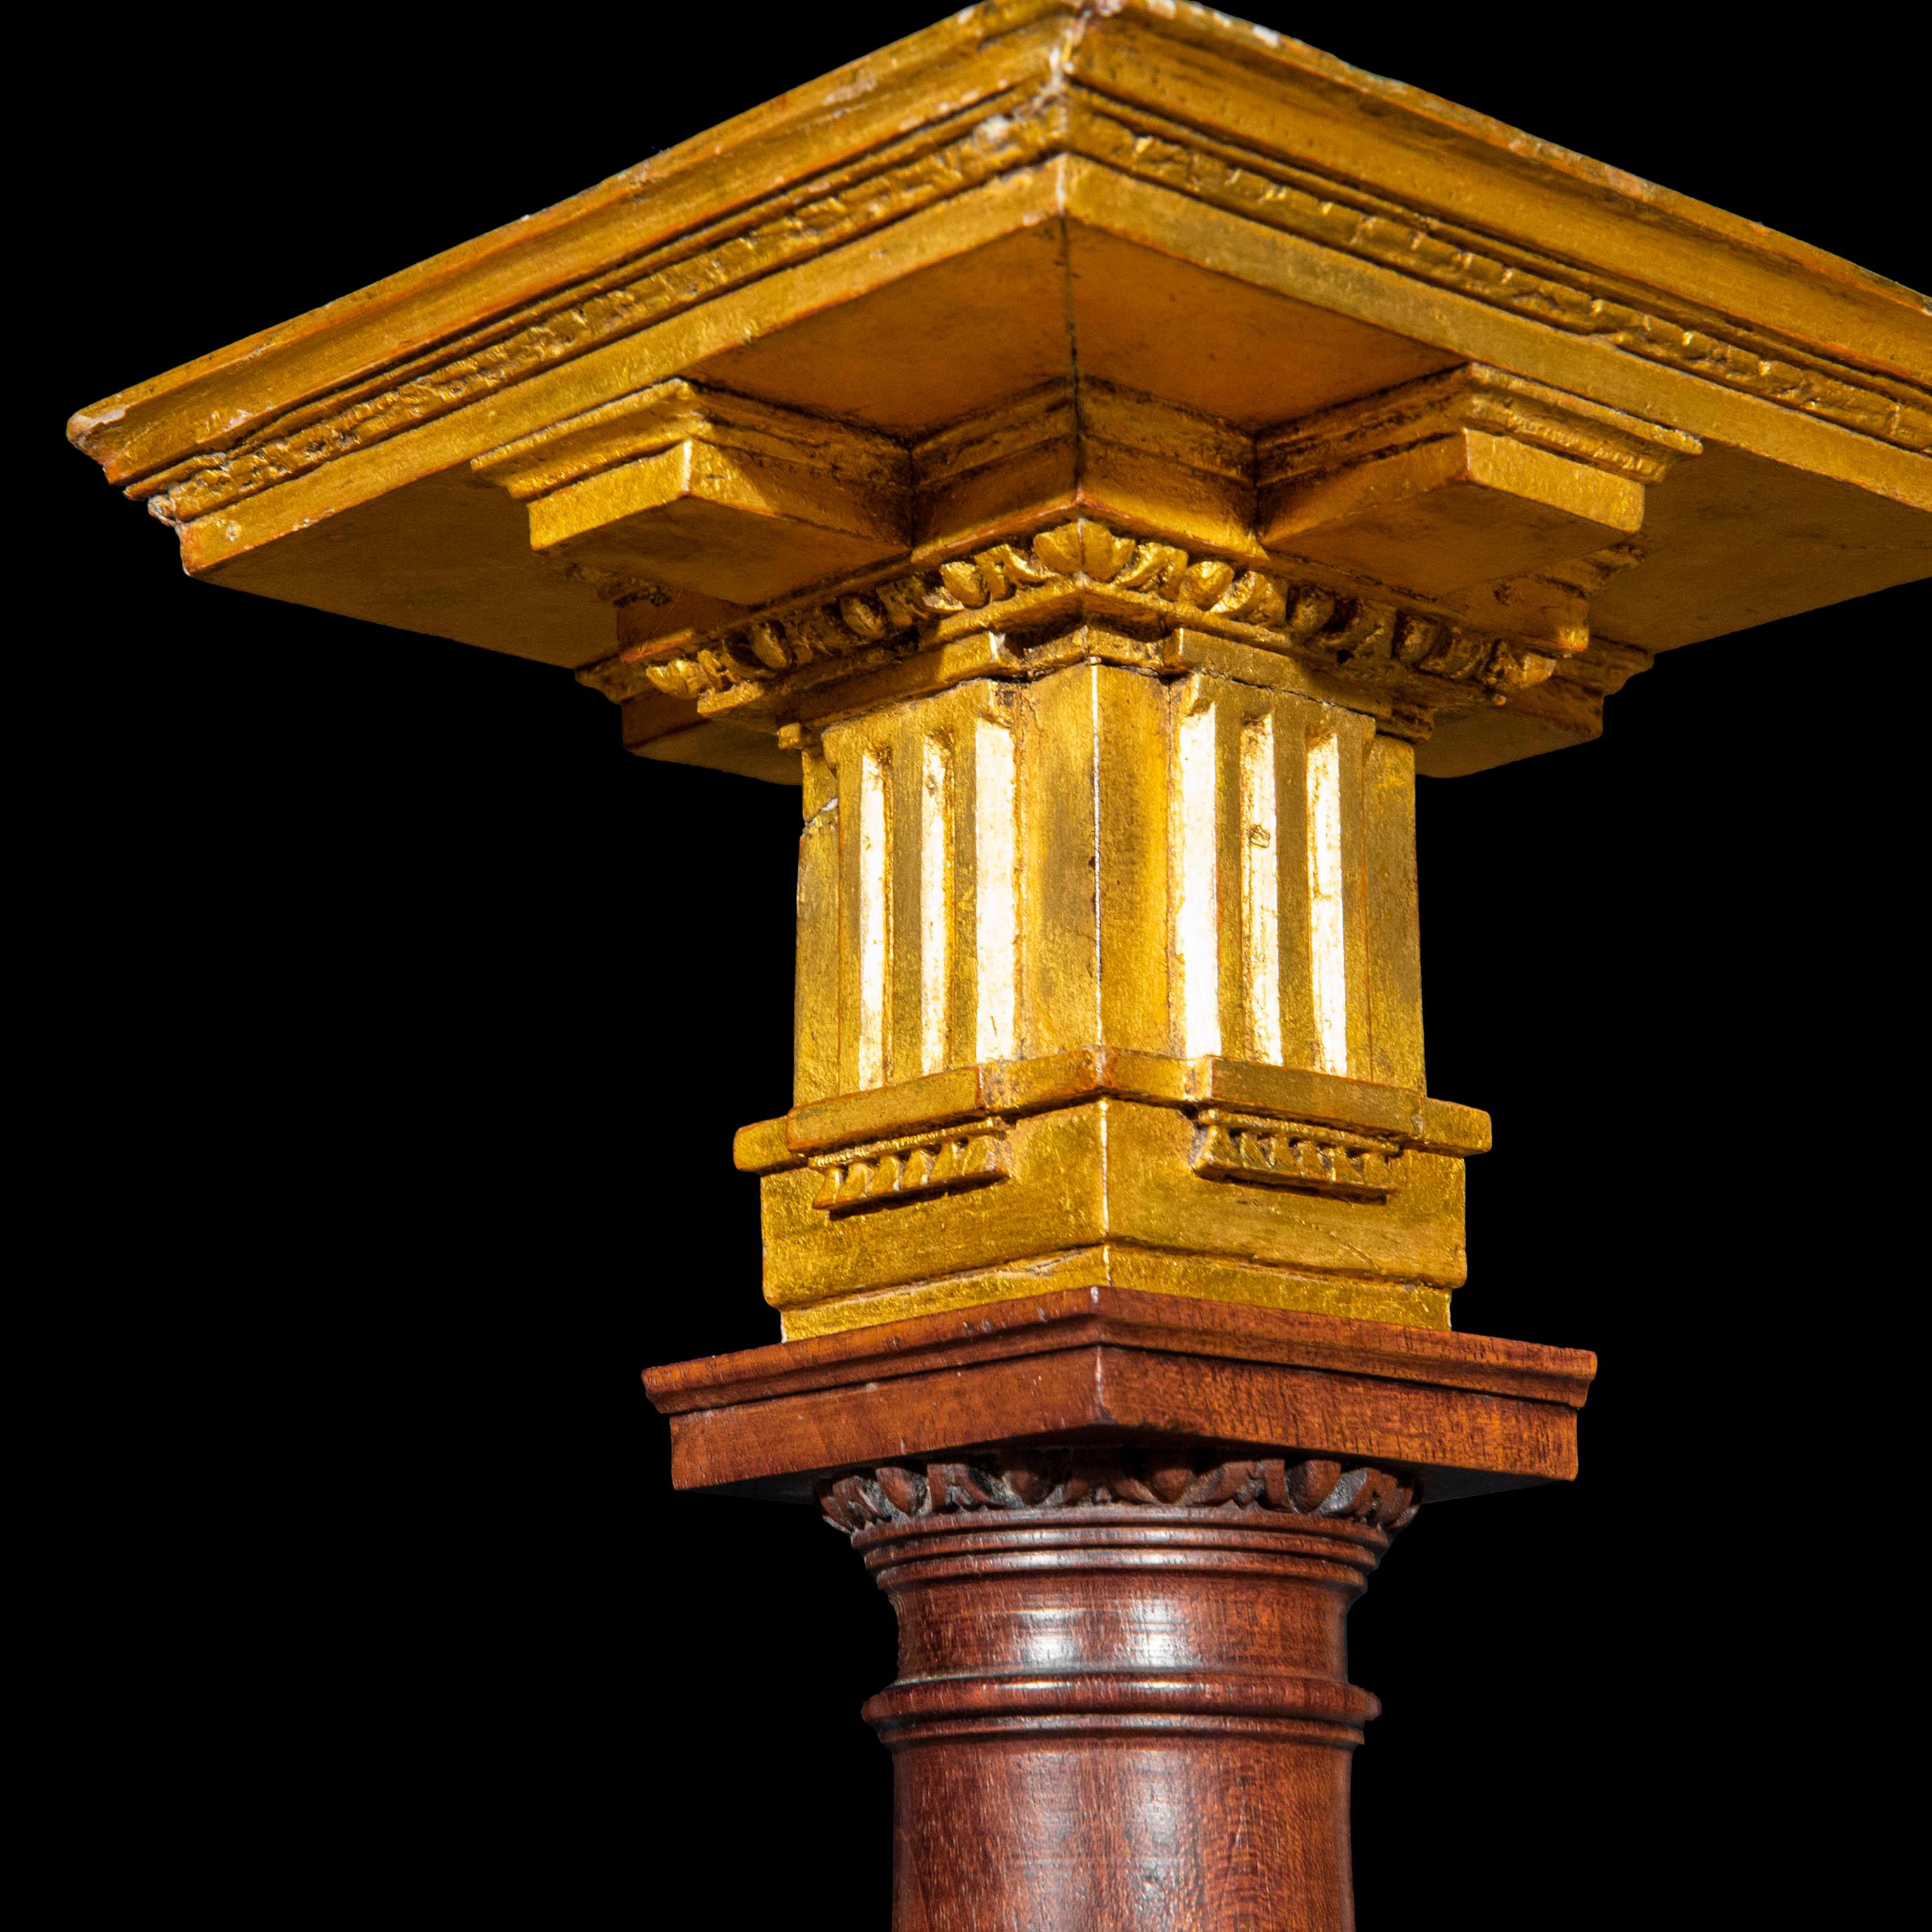 Un modèle architectural extrêmement rare et exquis d'une colonne dorique
Angleterre, troisième quart du XVIIIe siècle.

Pourquoi nous l'aimons
Exquisément sculpté et rehaussé d'or, ce rarissime survivant de l'âge d'or de l'architecture classique